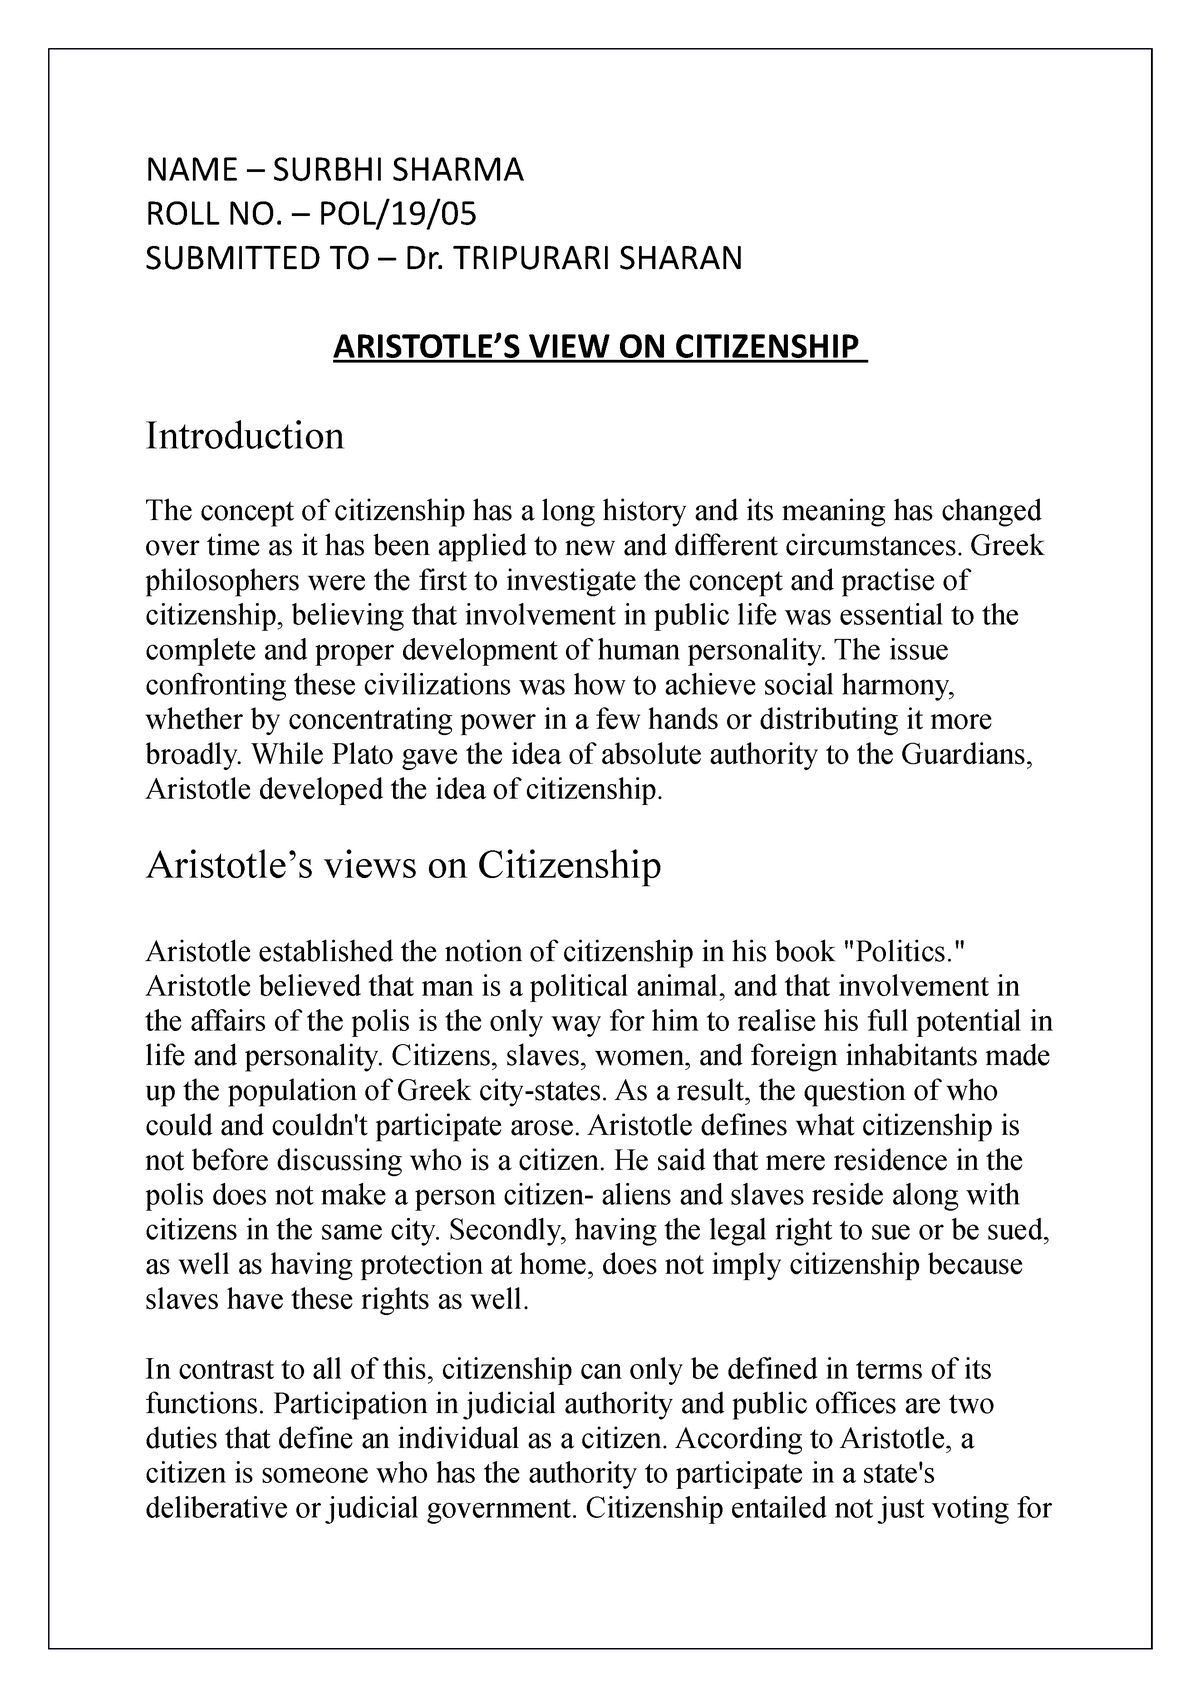 aristotle on citizenship essay